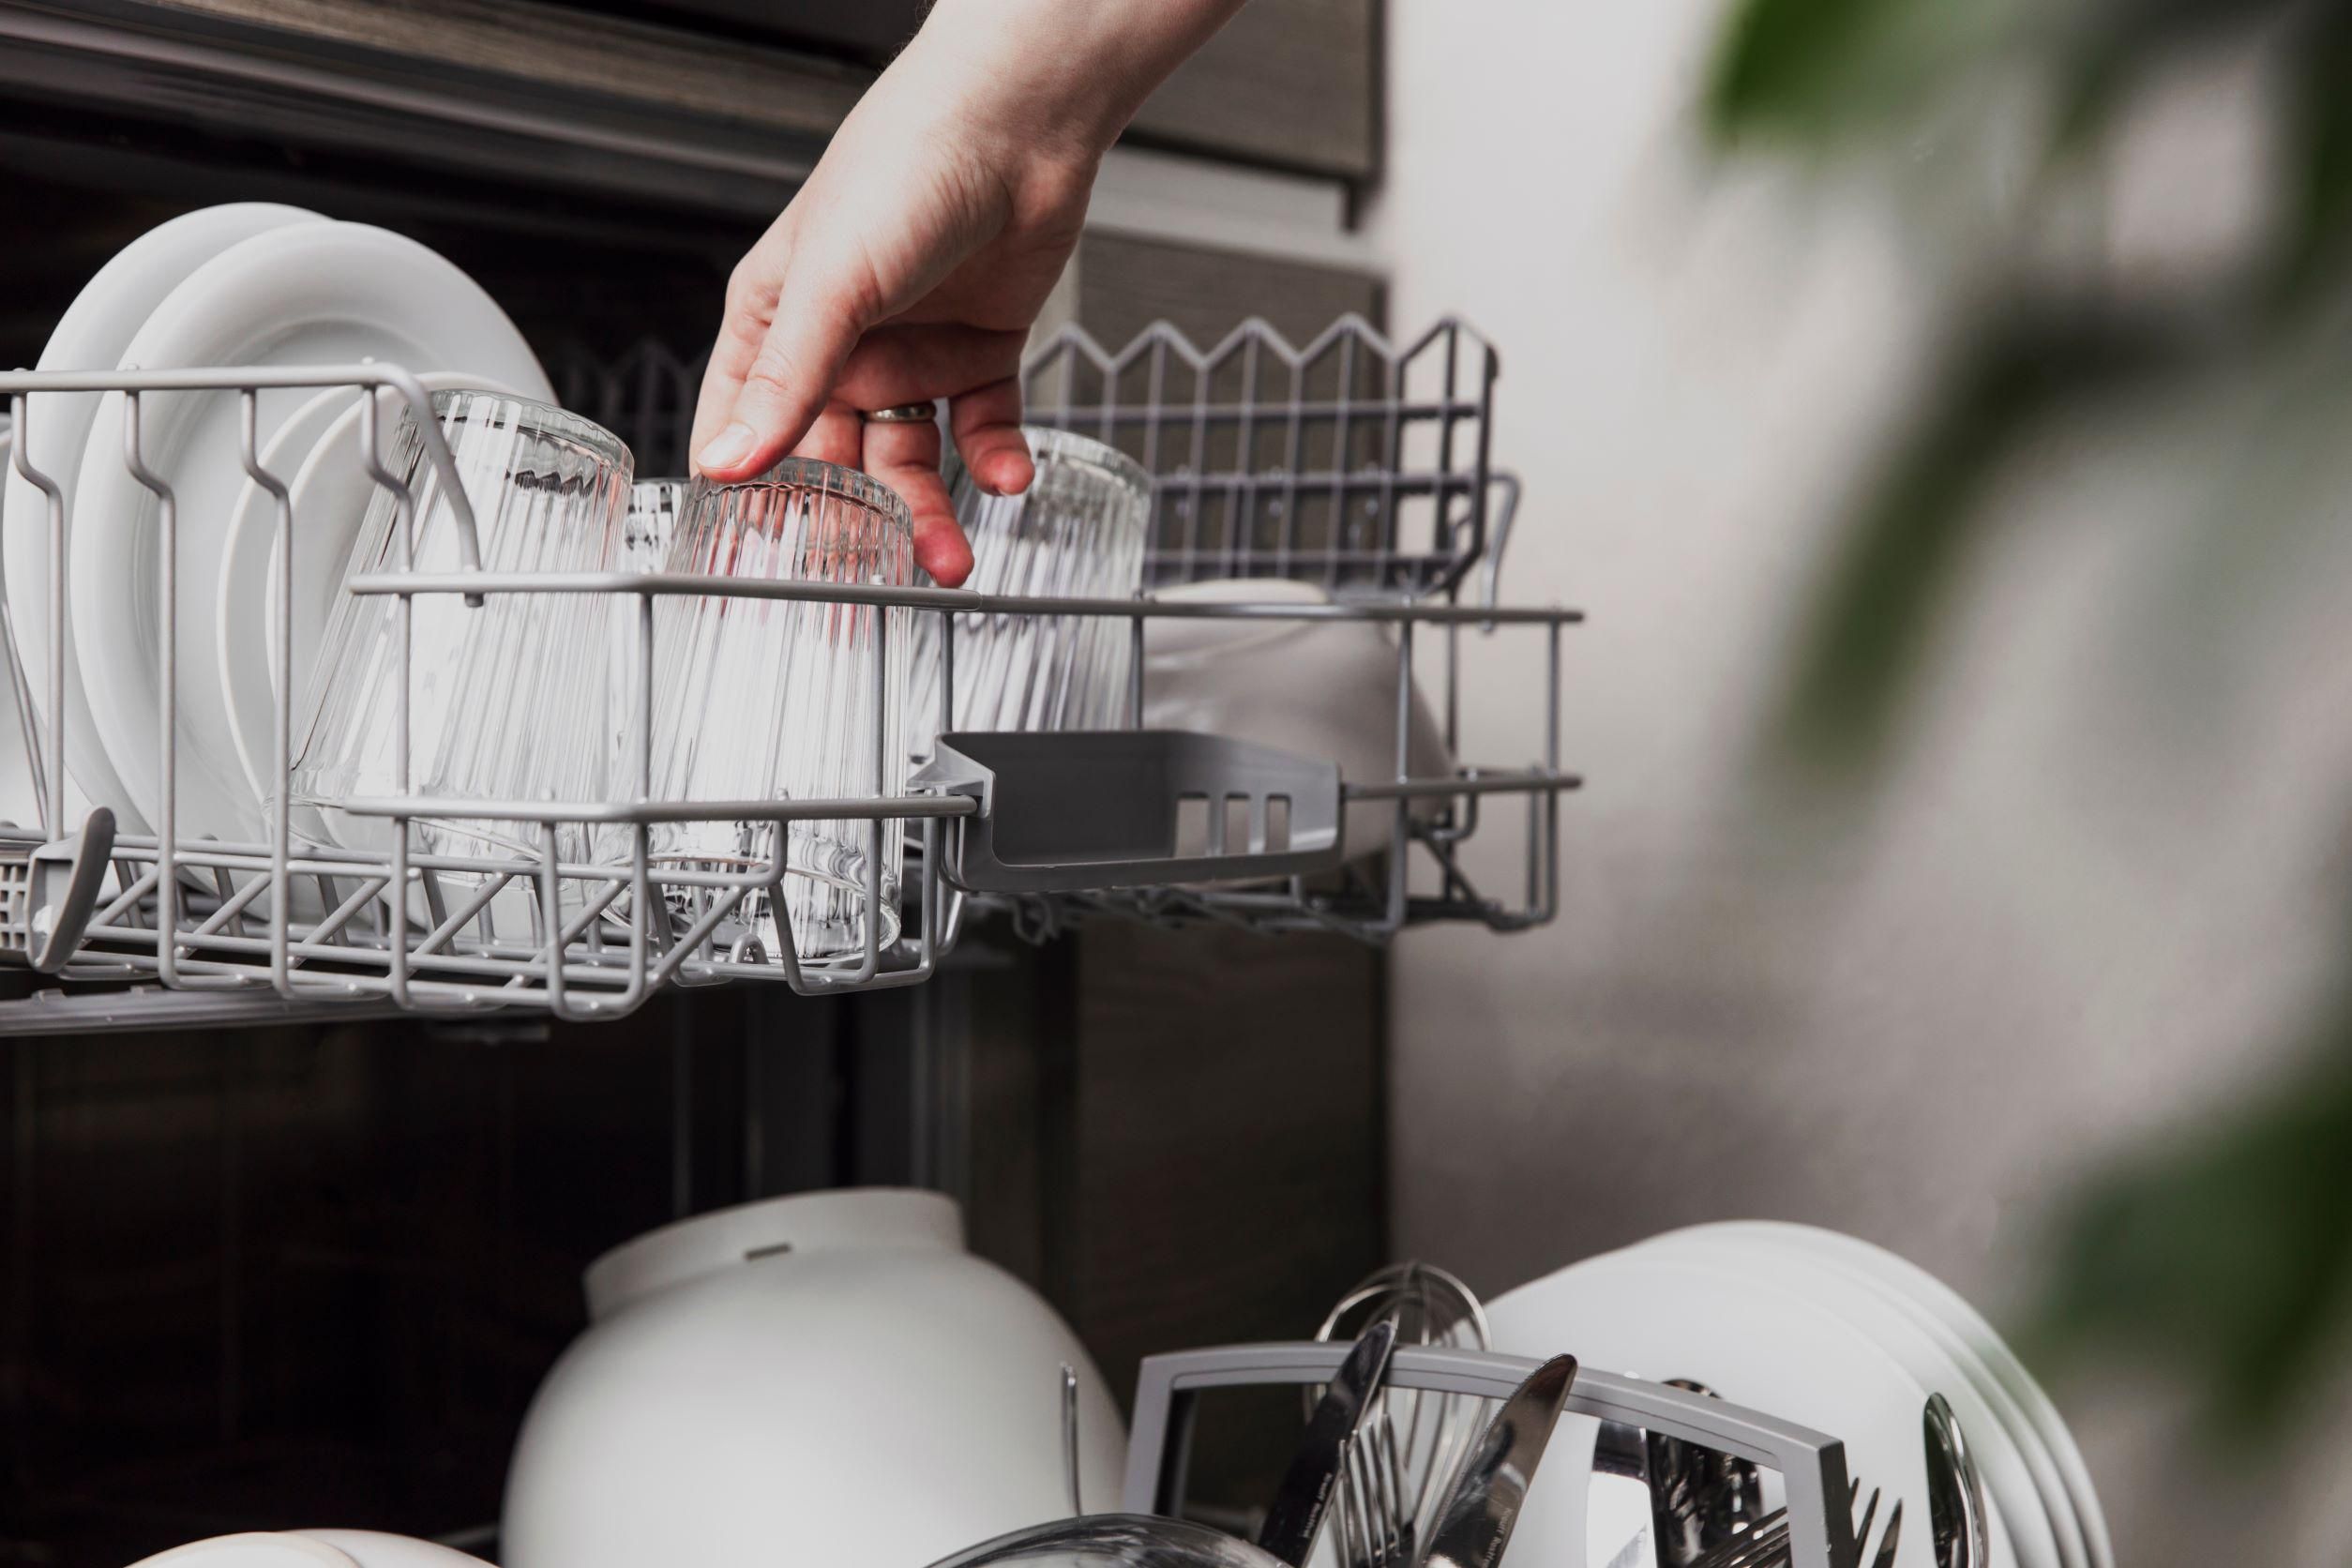 Sokan használják rosszul a mosógépet, a hűtőt és a mosogatógépet